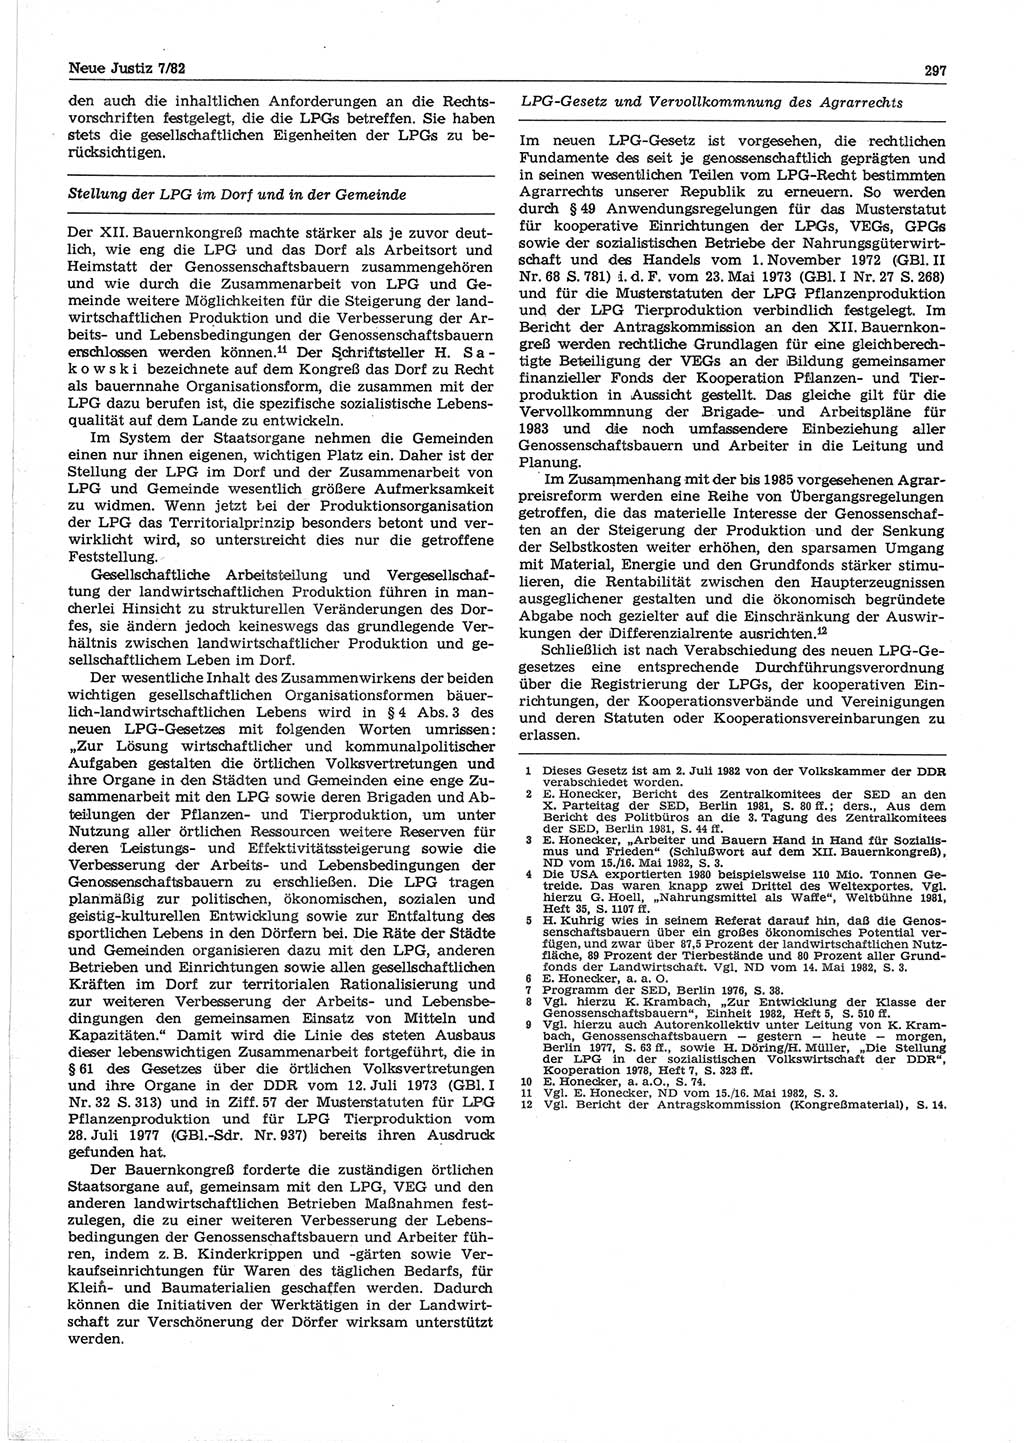 Neue Justiz (NJ), Zeitschrift für sozialistisches Recht und Gesetzlichkeit [Deutsche Demokratische Republik (DDR)], 36. Jahrgang 1982, Seite 297 (NJ DDR 1982, S. 297)